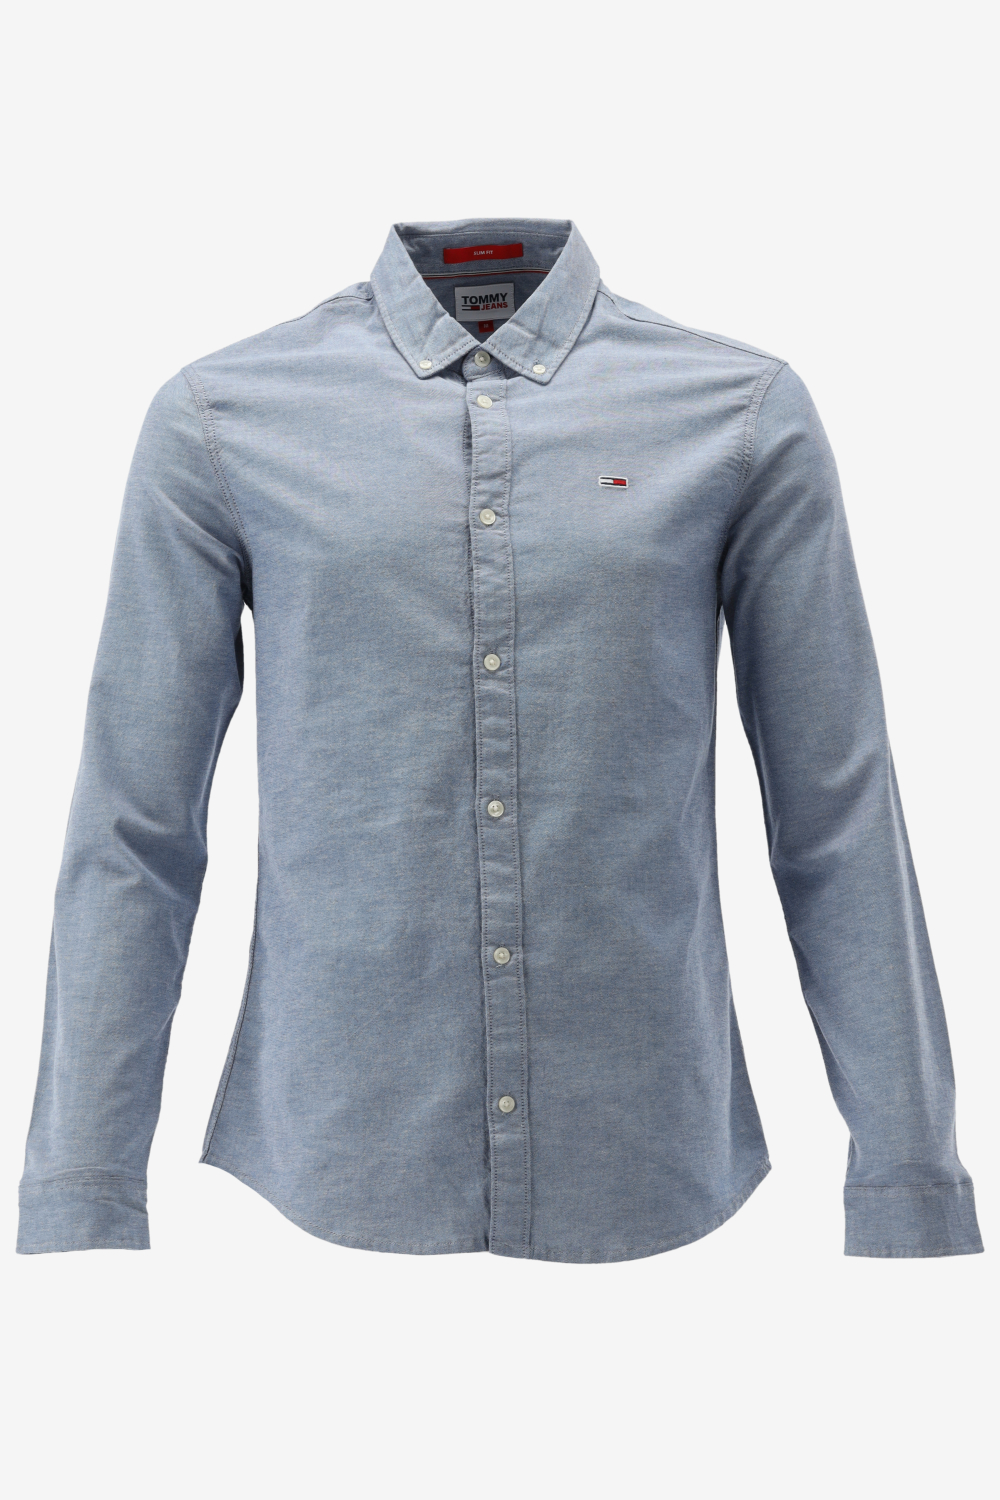 Tommy Hilfiger - Heren Overhemden Slim Fit Oxford Stretch - Blauw - Maat XL